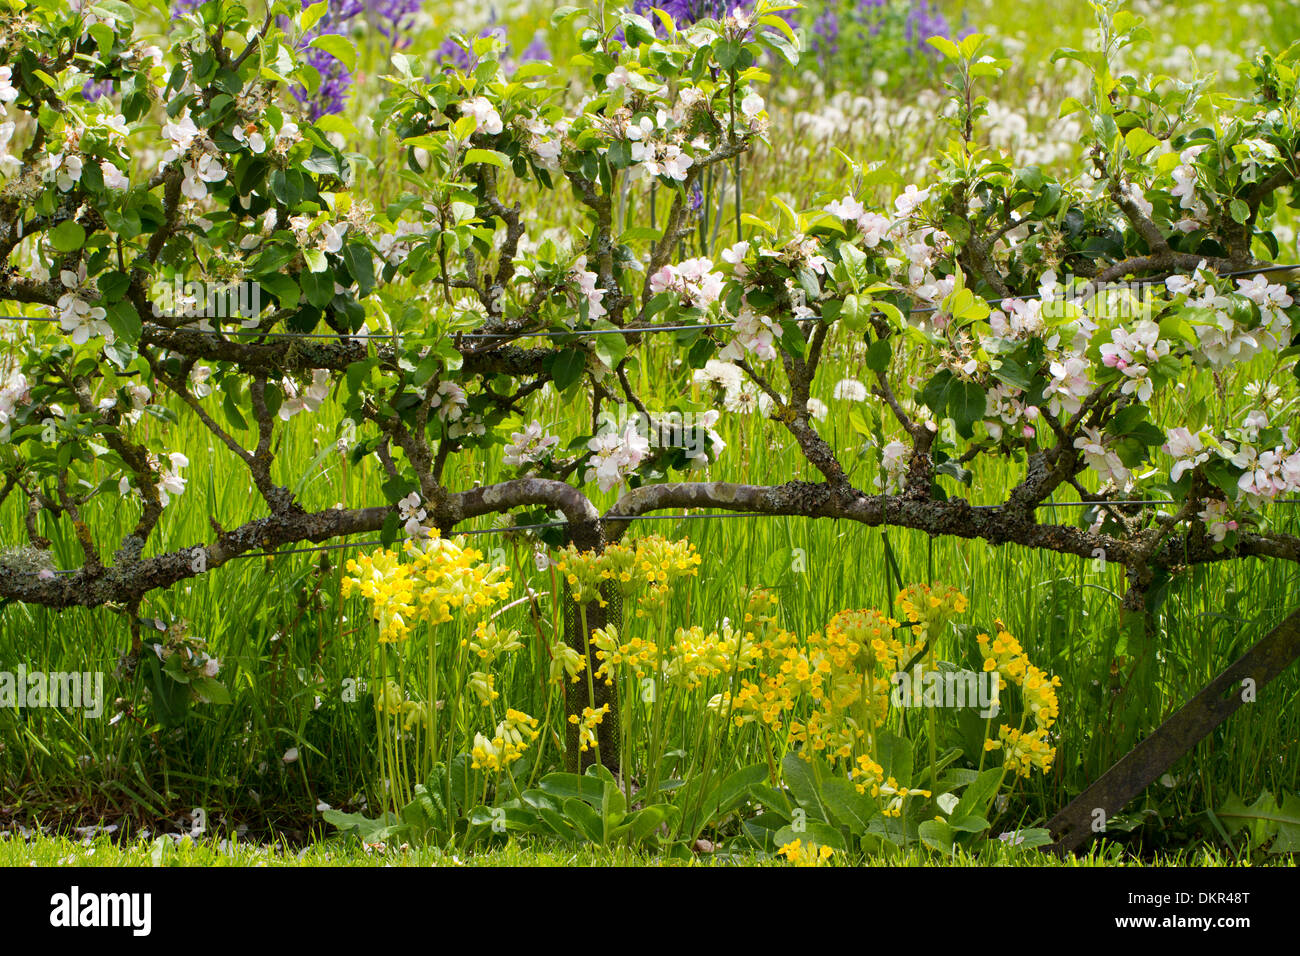 Apple alberi cresciuti come due-tiered espaliers fioritura in un giardino. Herefordshire, Inghilterra. Maggio. Foto Stock